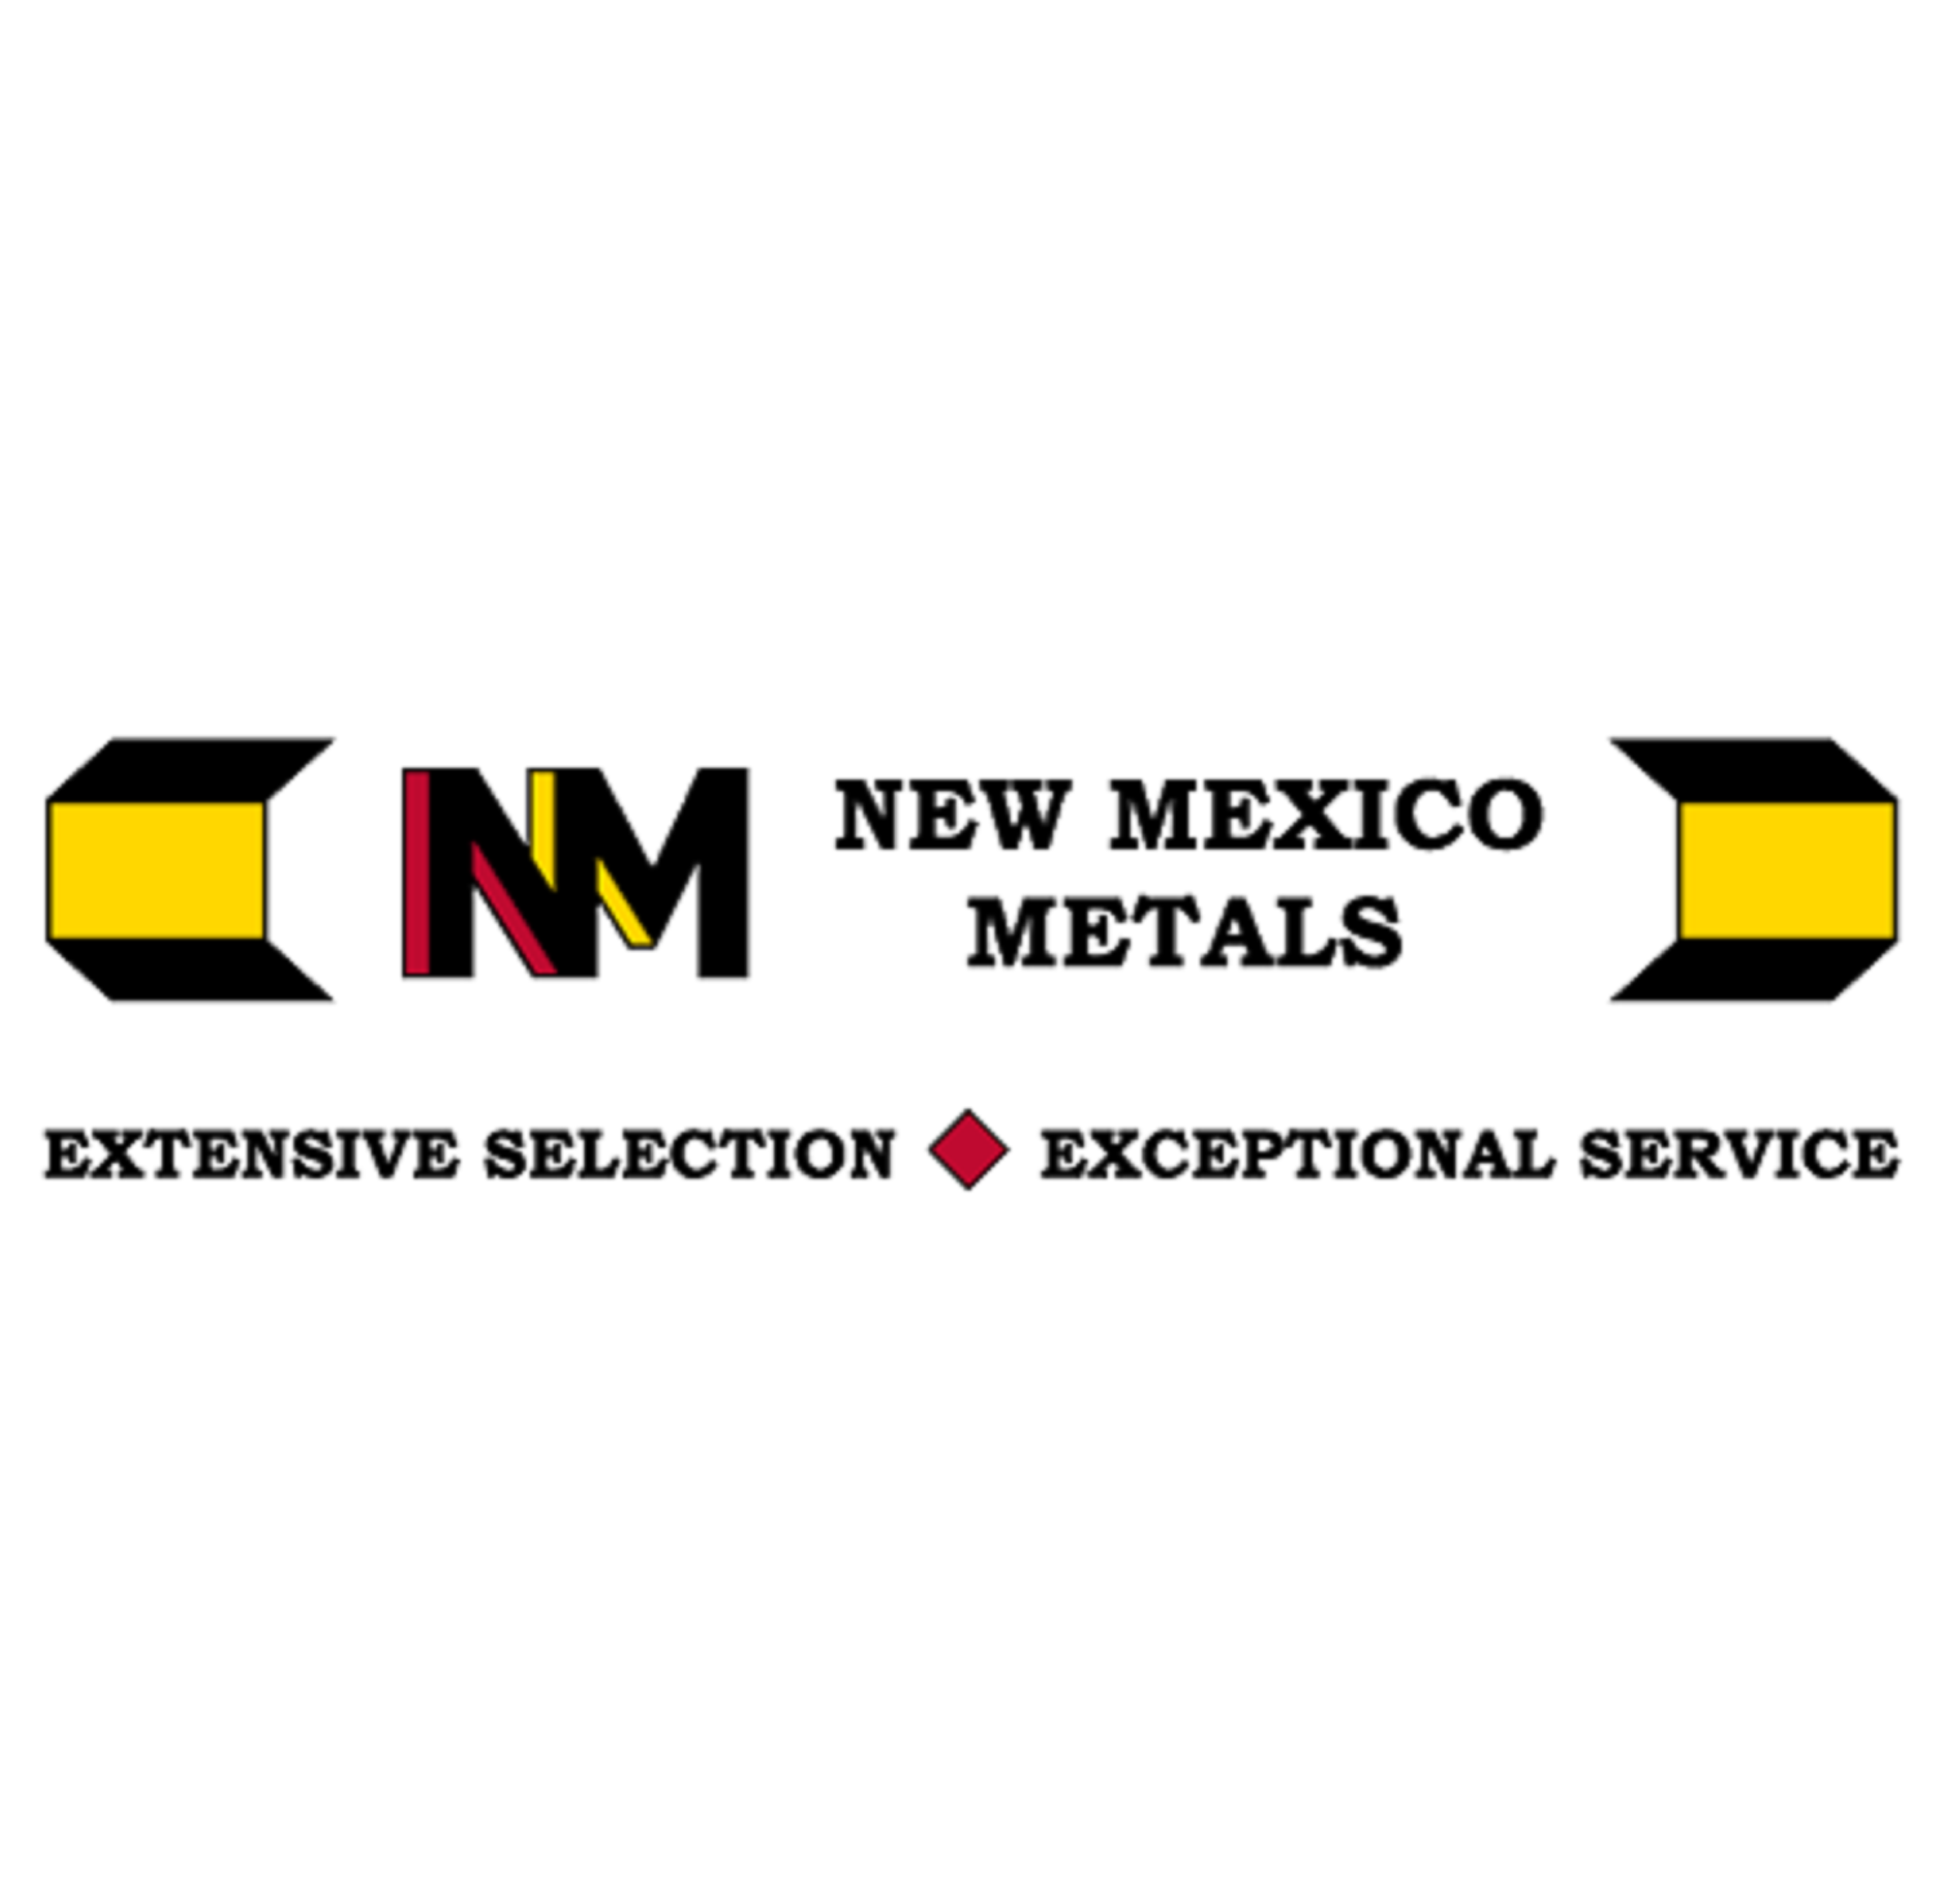 New Mexico Metals